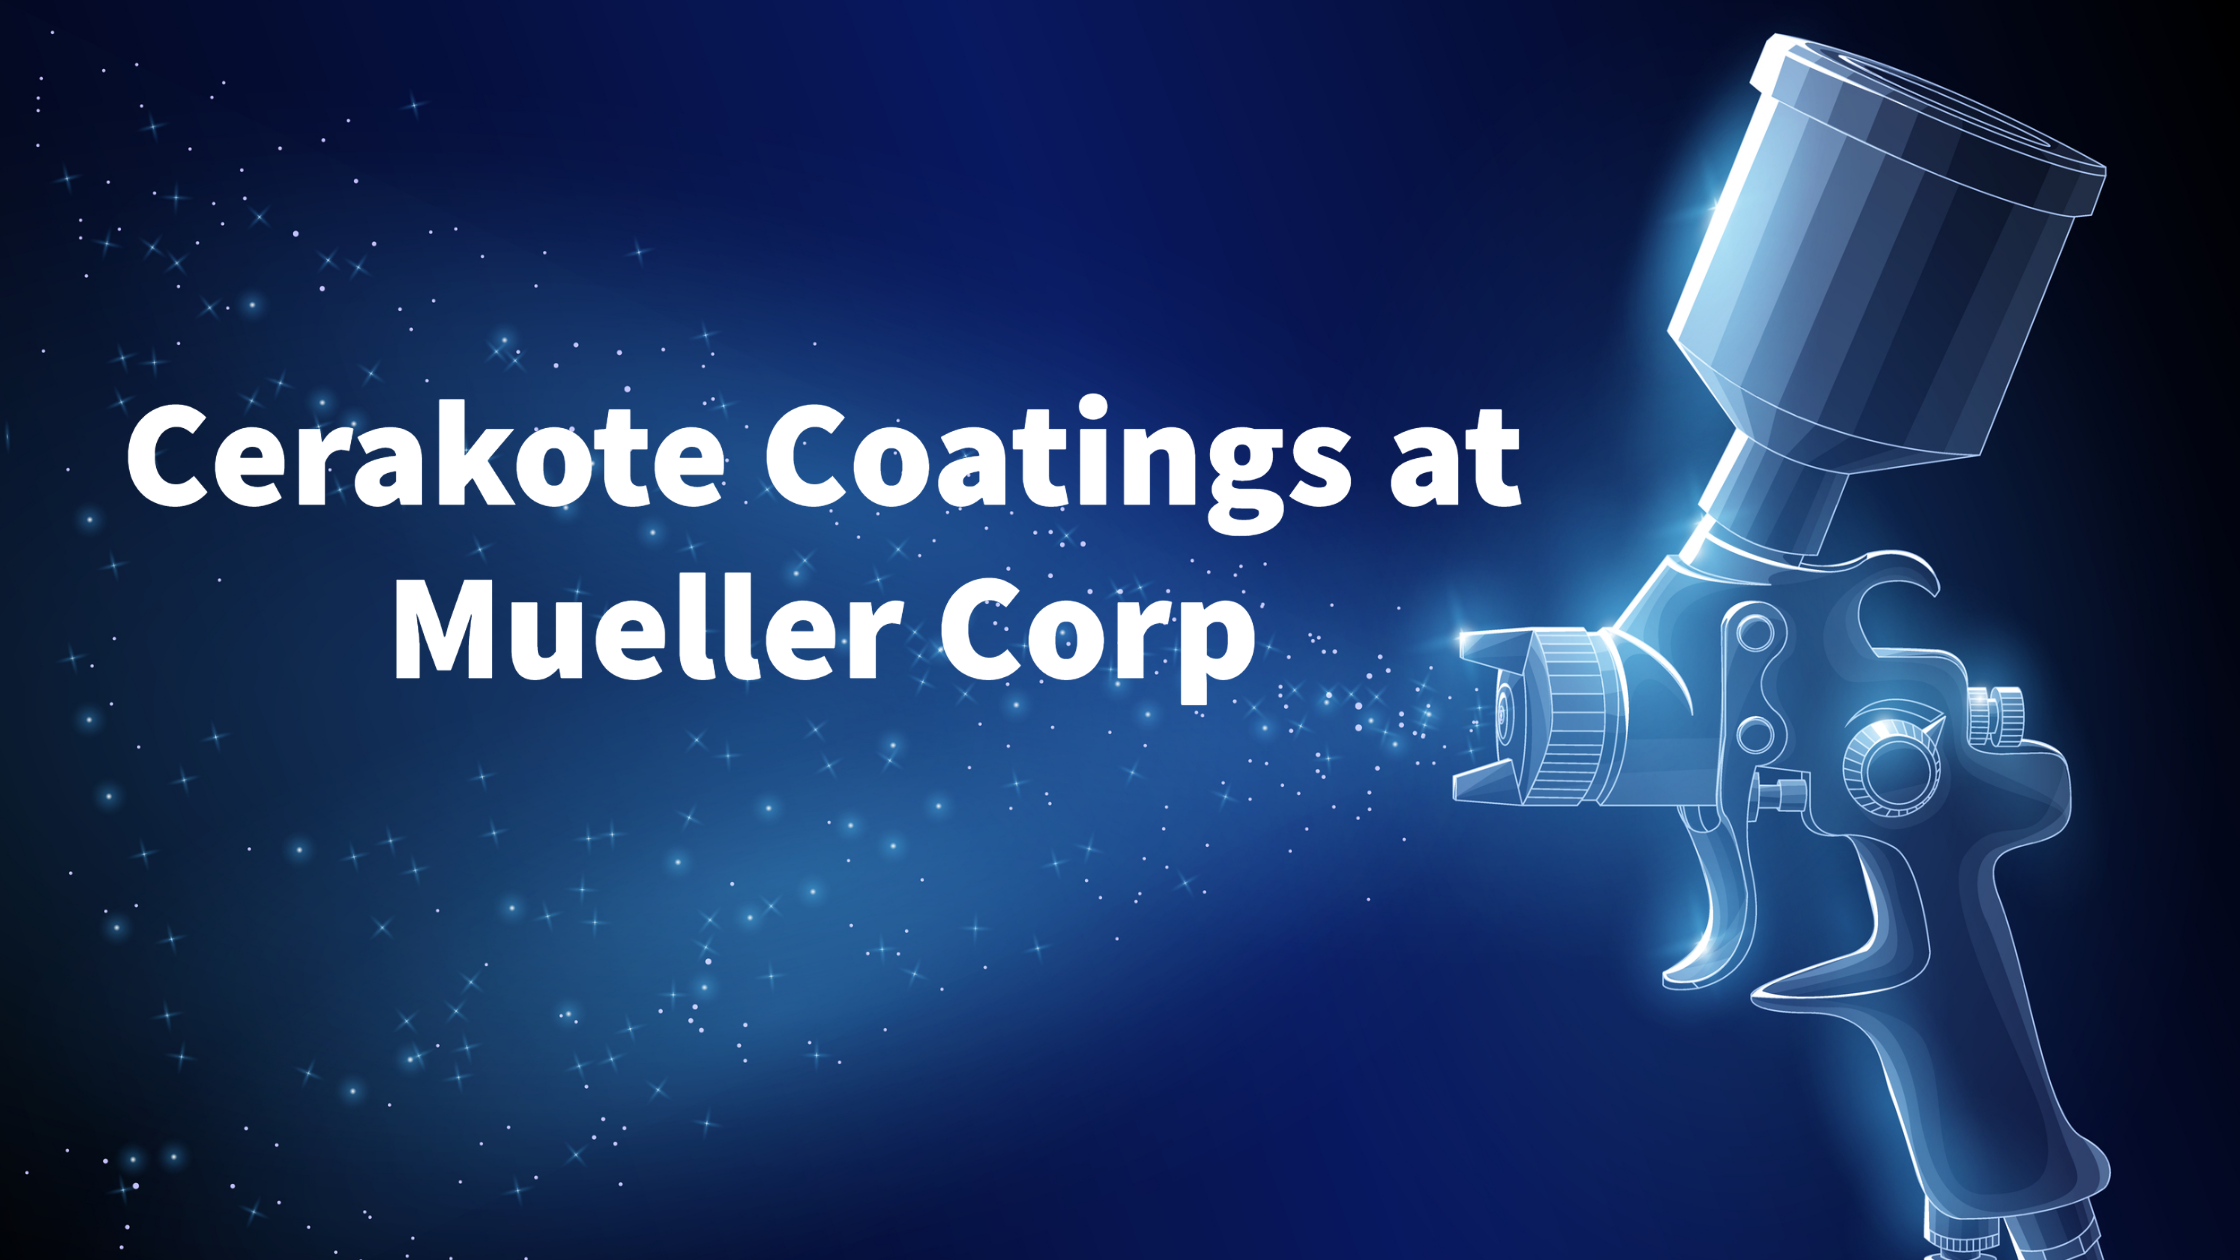 Cerakote coatings at Mueller Corp